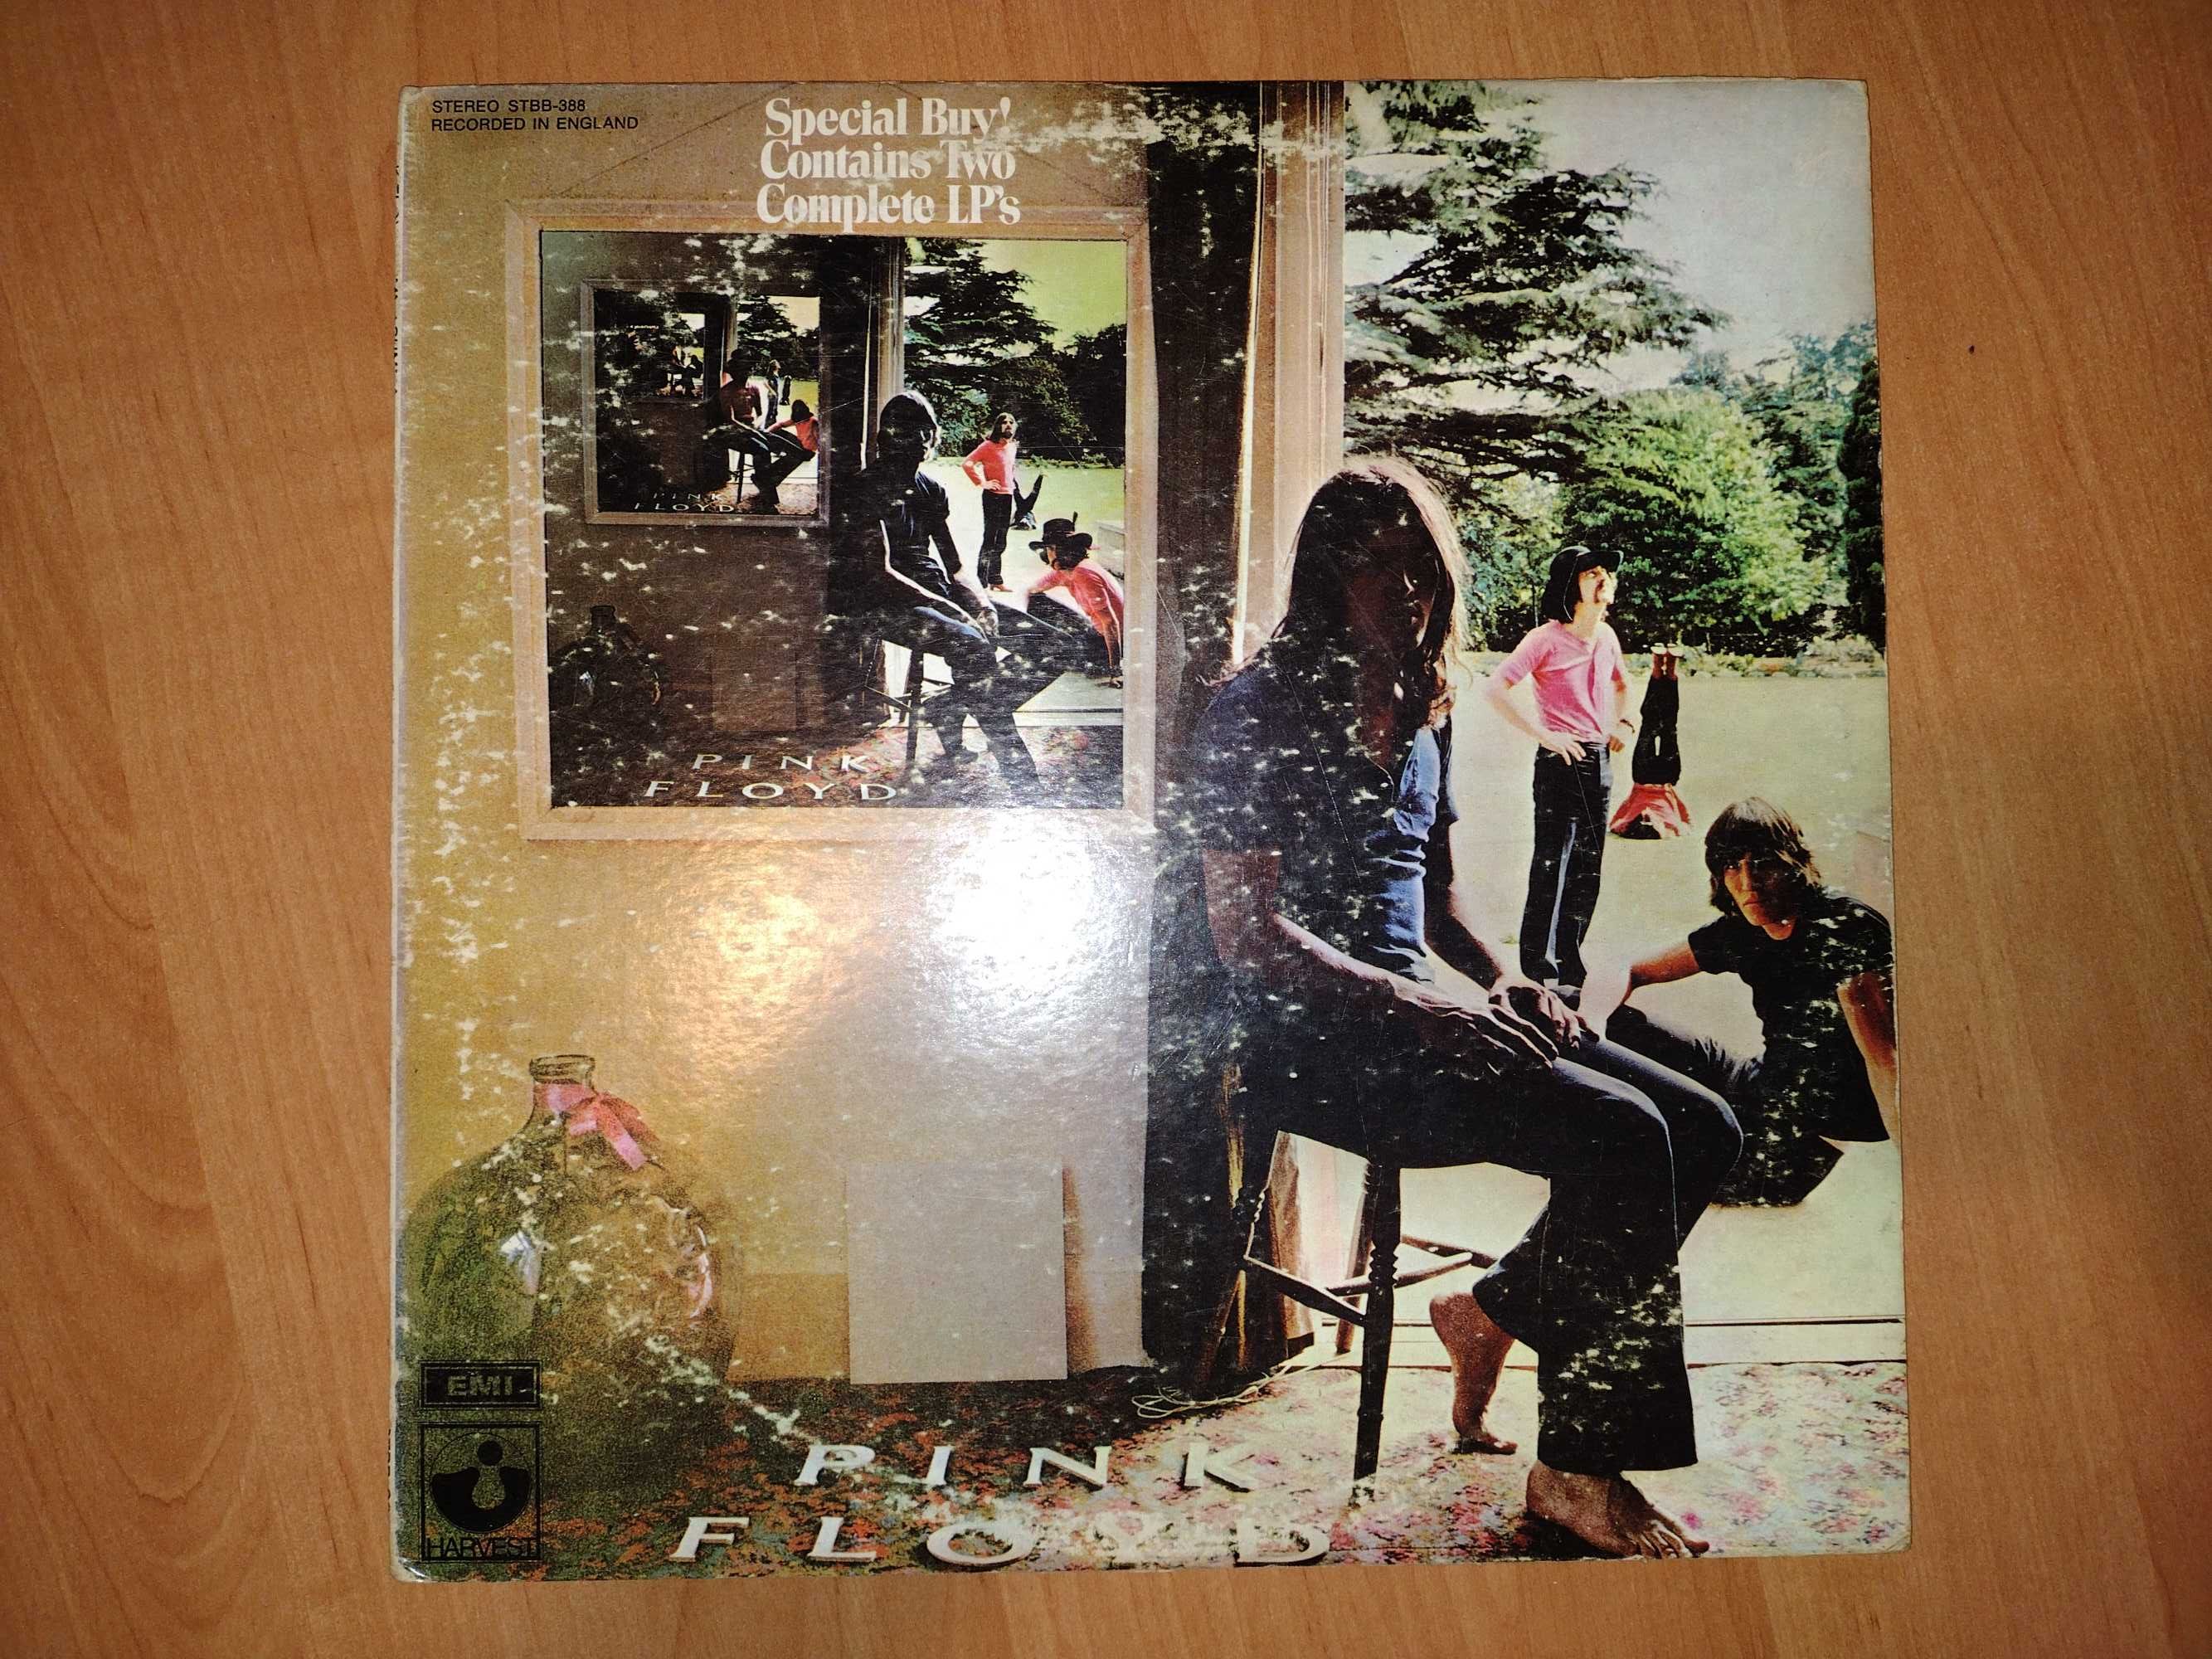 Pink Floyd – Ummagumma (Harvest, US 1970)